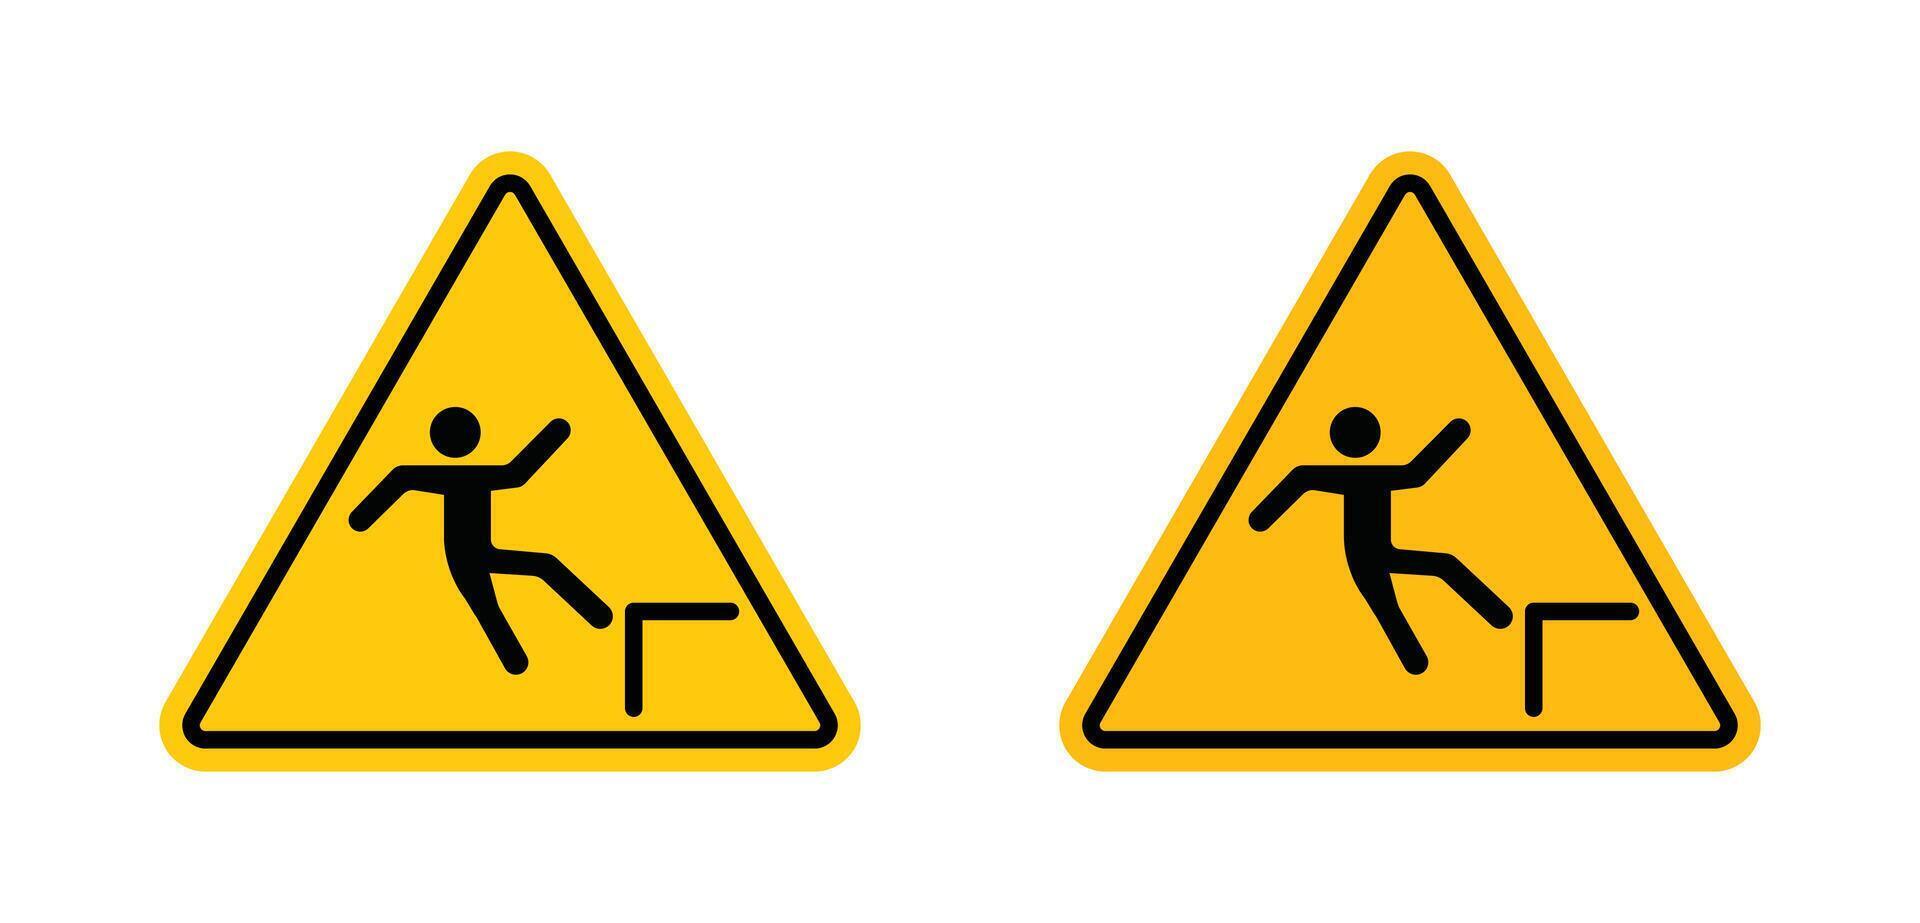 Slip Warning  sign vector